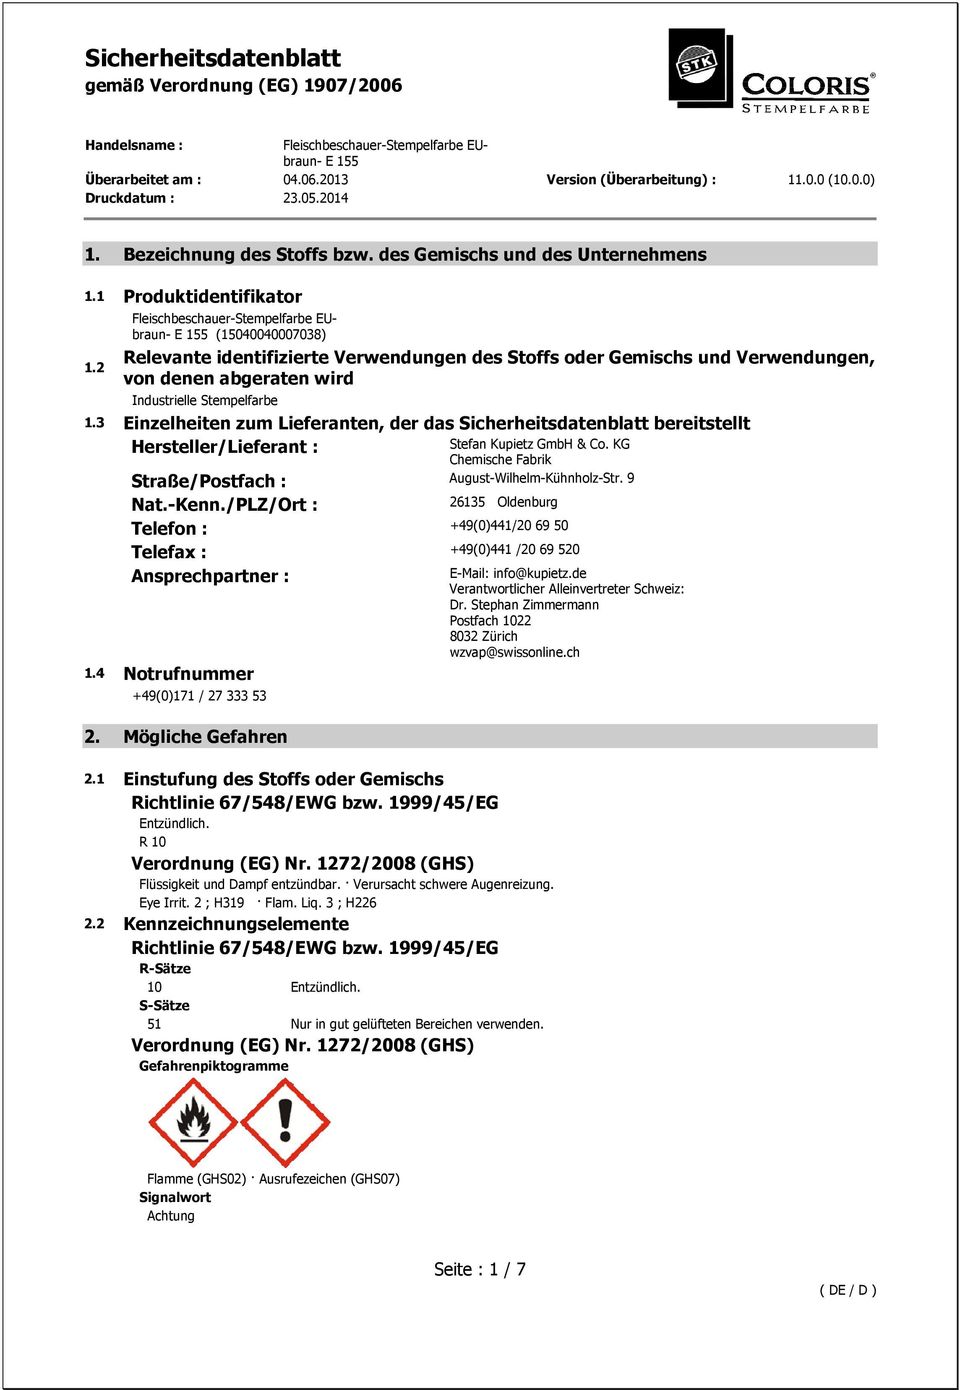 3 Einzelheiten zum Lieferanten, der das Sicherheitsdatenblatt bereitstellt Hersteller/Lieferant : Stefan Kupietz GmbH & Co. KG Chemische Fabrik Straße/Postfach : August-Wilhelm-Kühnholz-Str. 9 Nat.